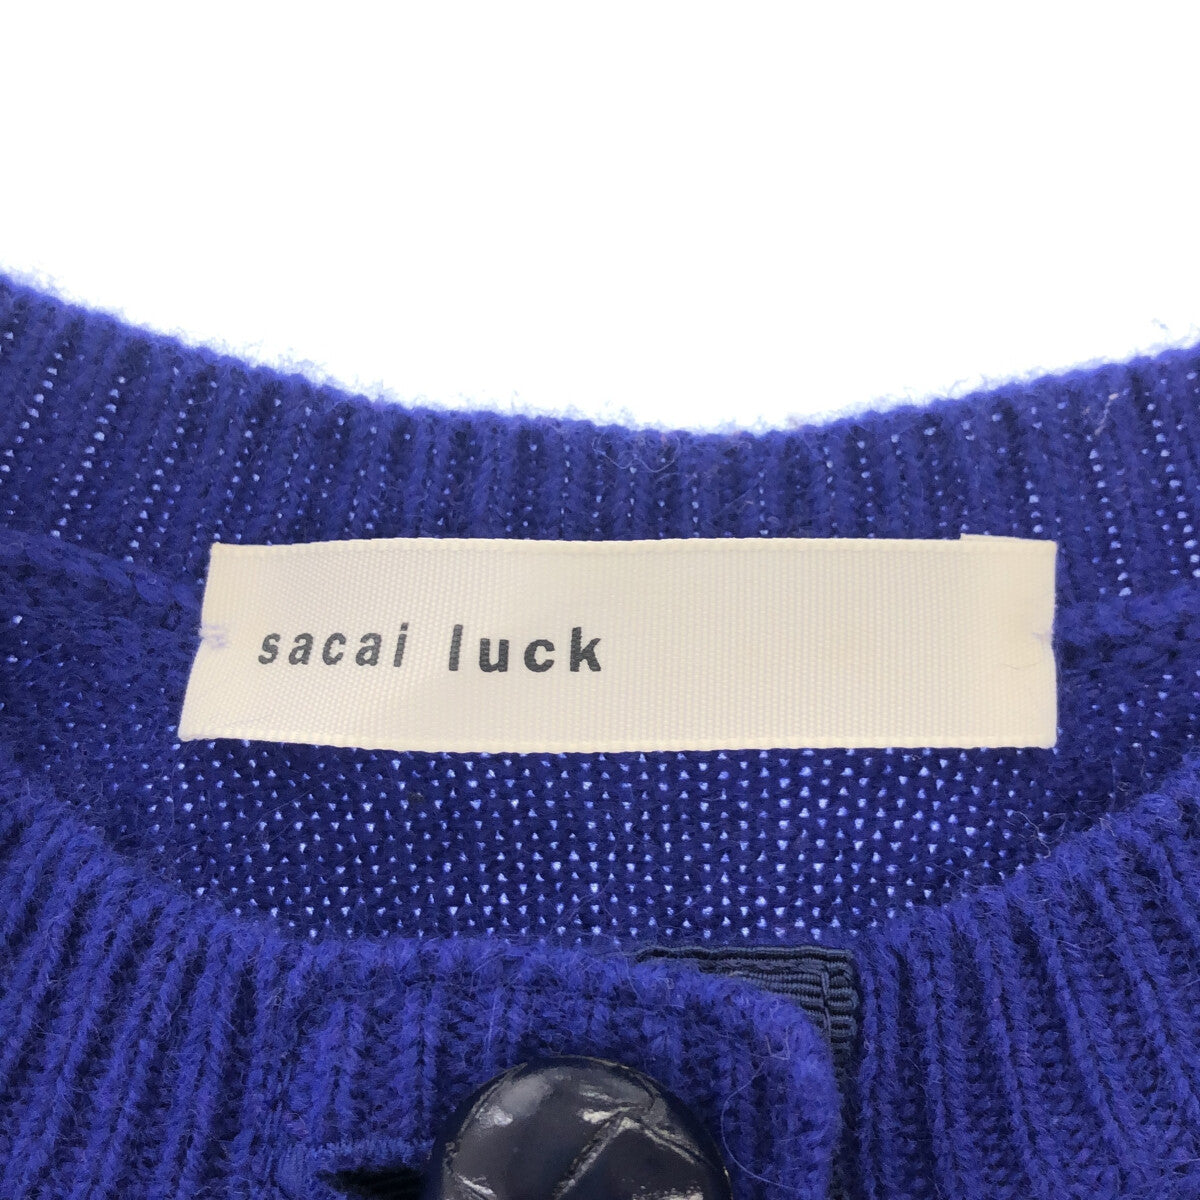 sacai luck / サカイラック | ケーブル編み フリル切替 クルーネック